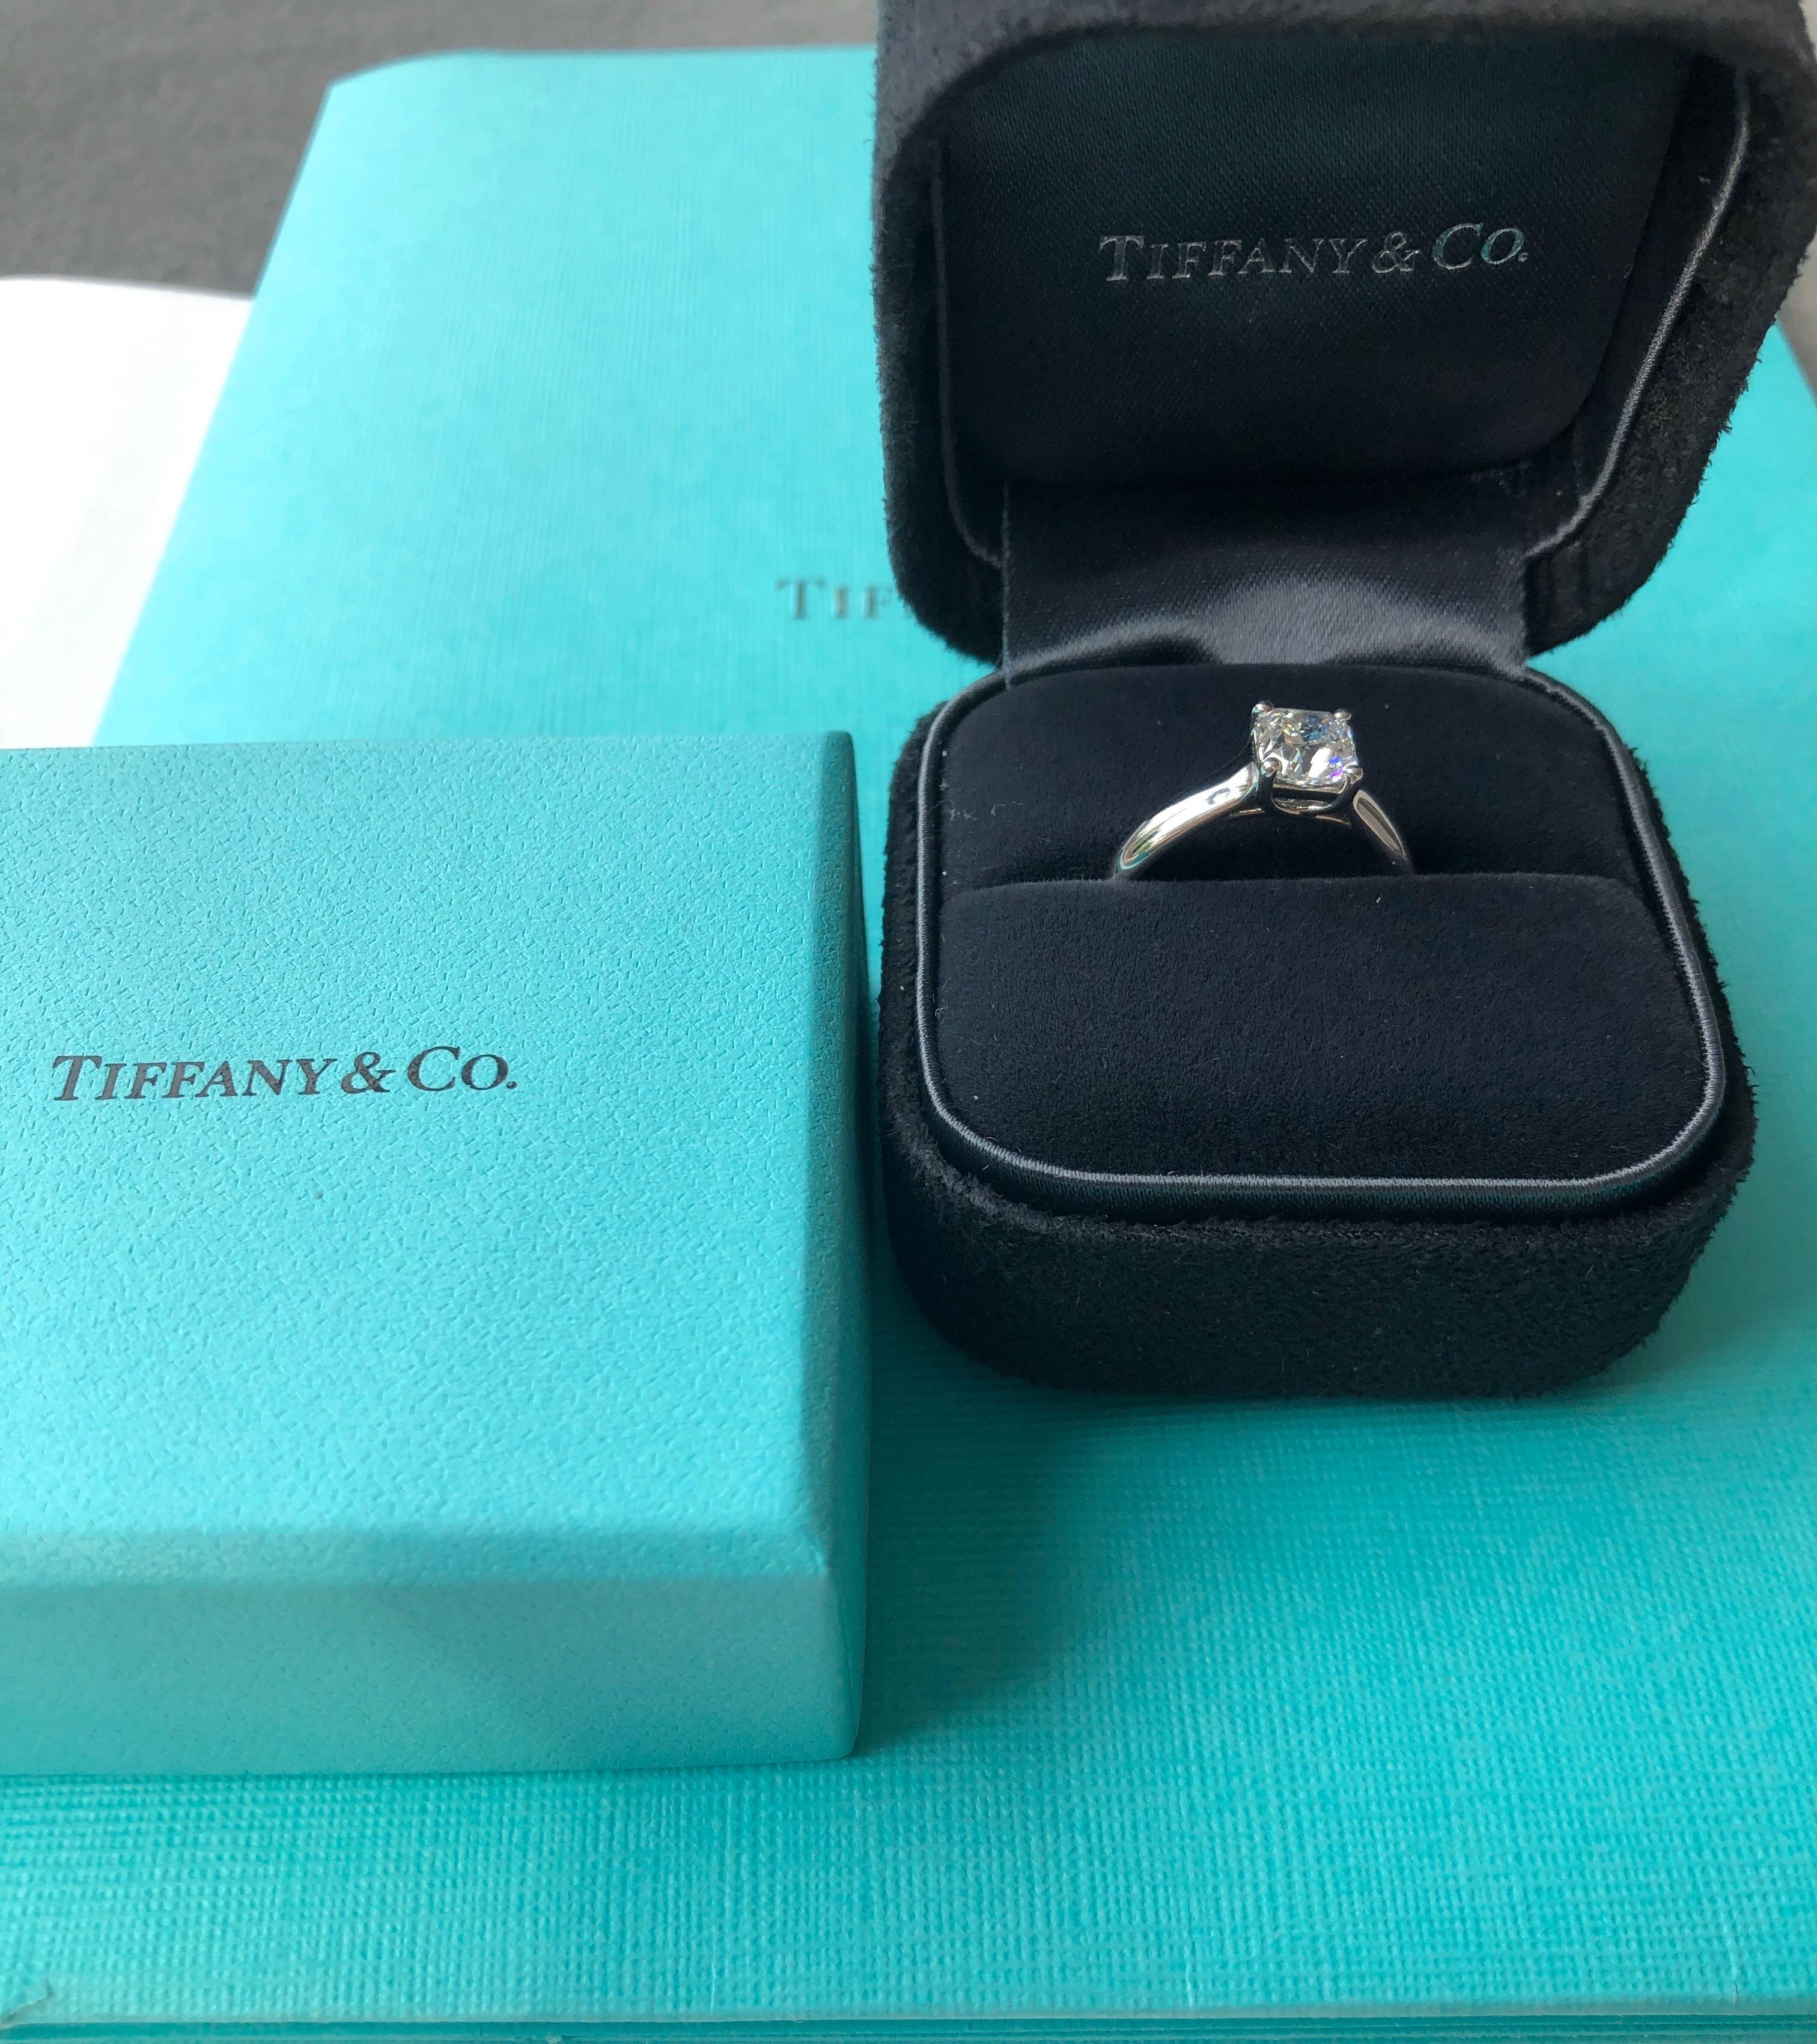 Tiffany & Co. 1.02 Carat H VS1 Lucida Diamond Solitaire Ring, Platinum 2